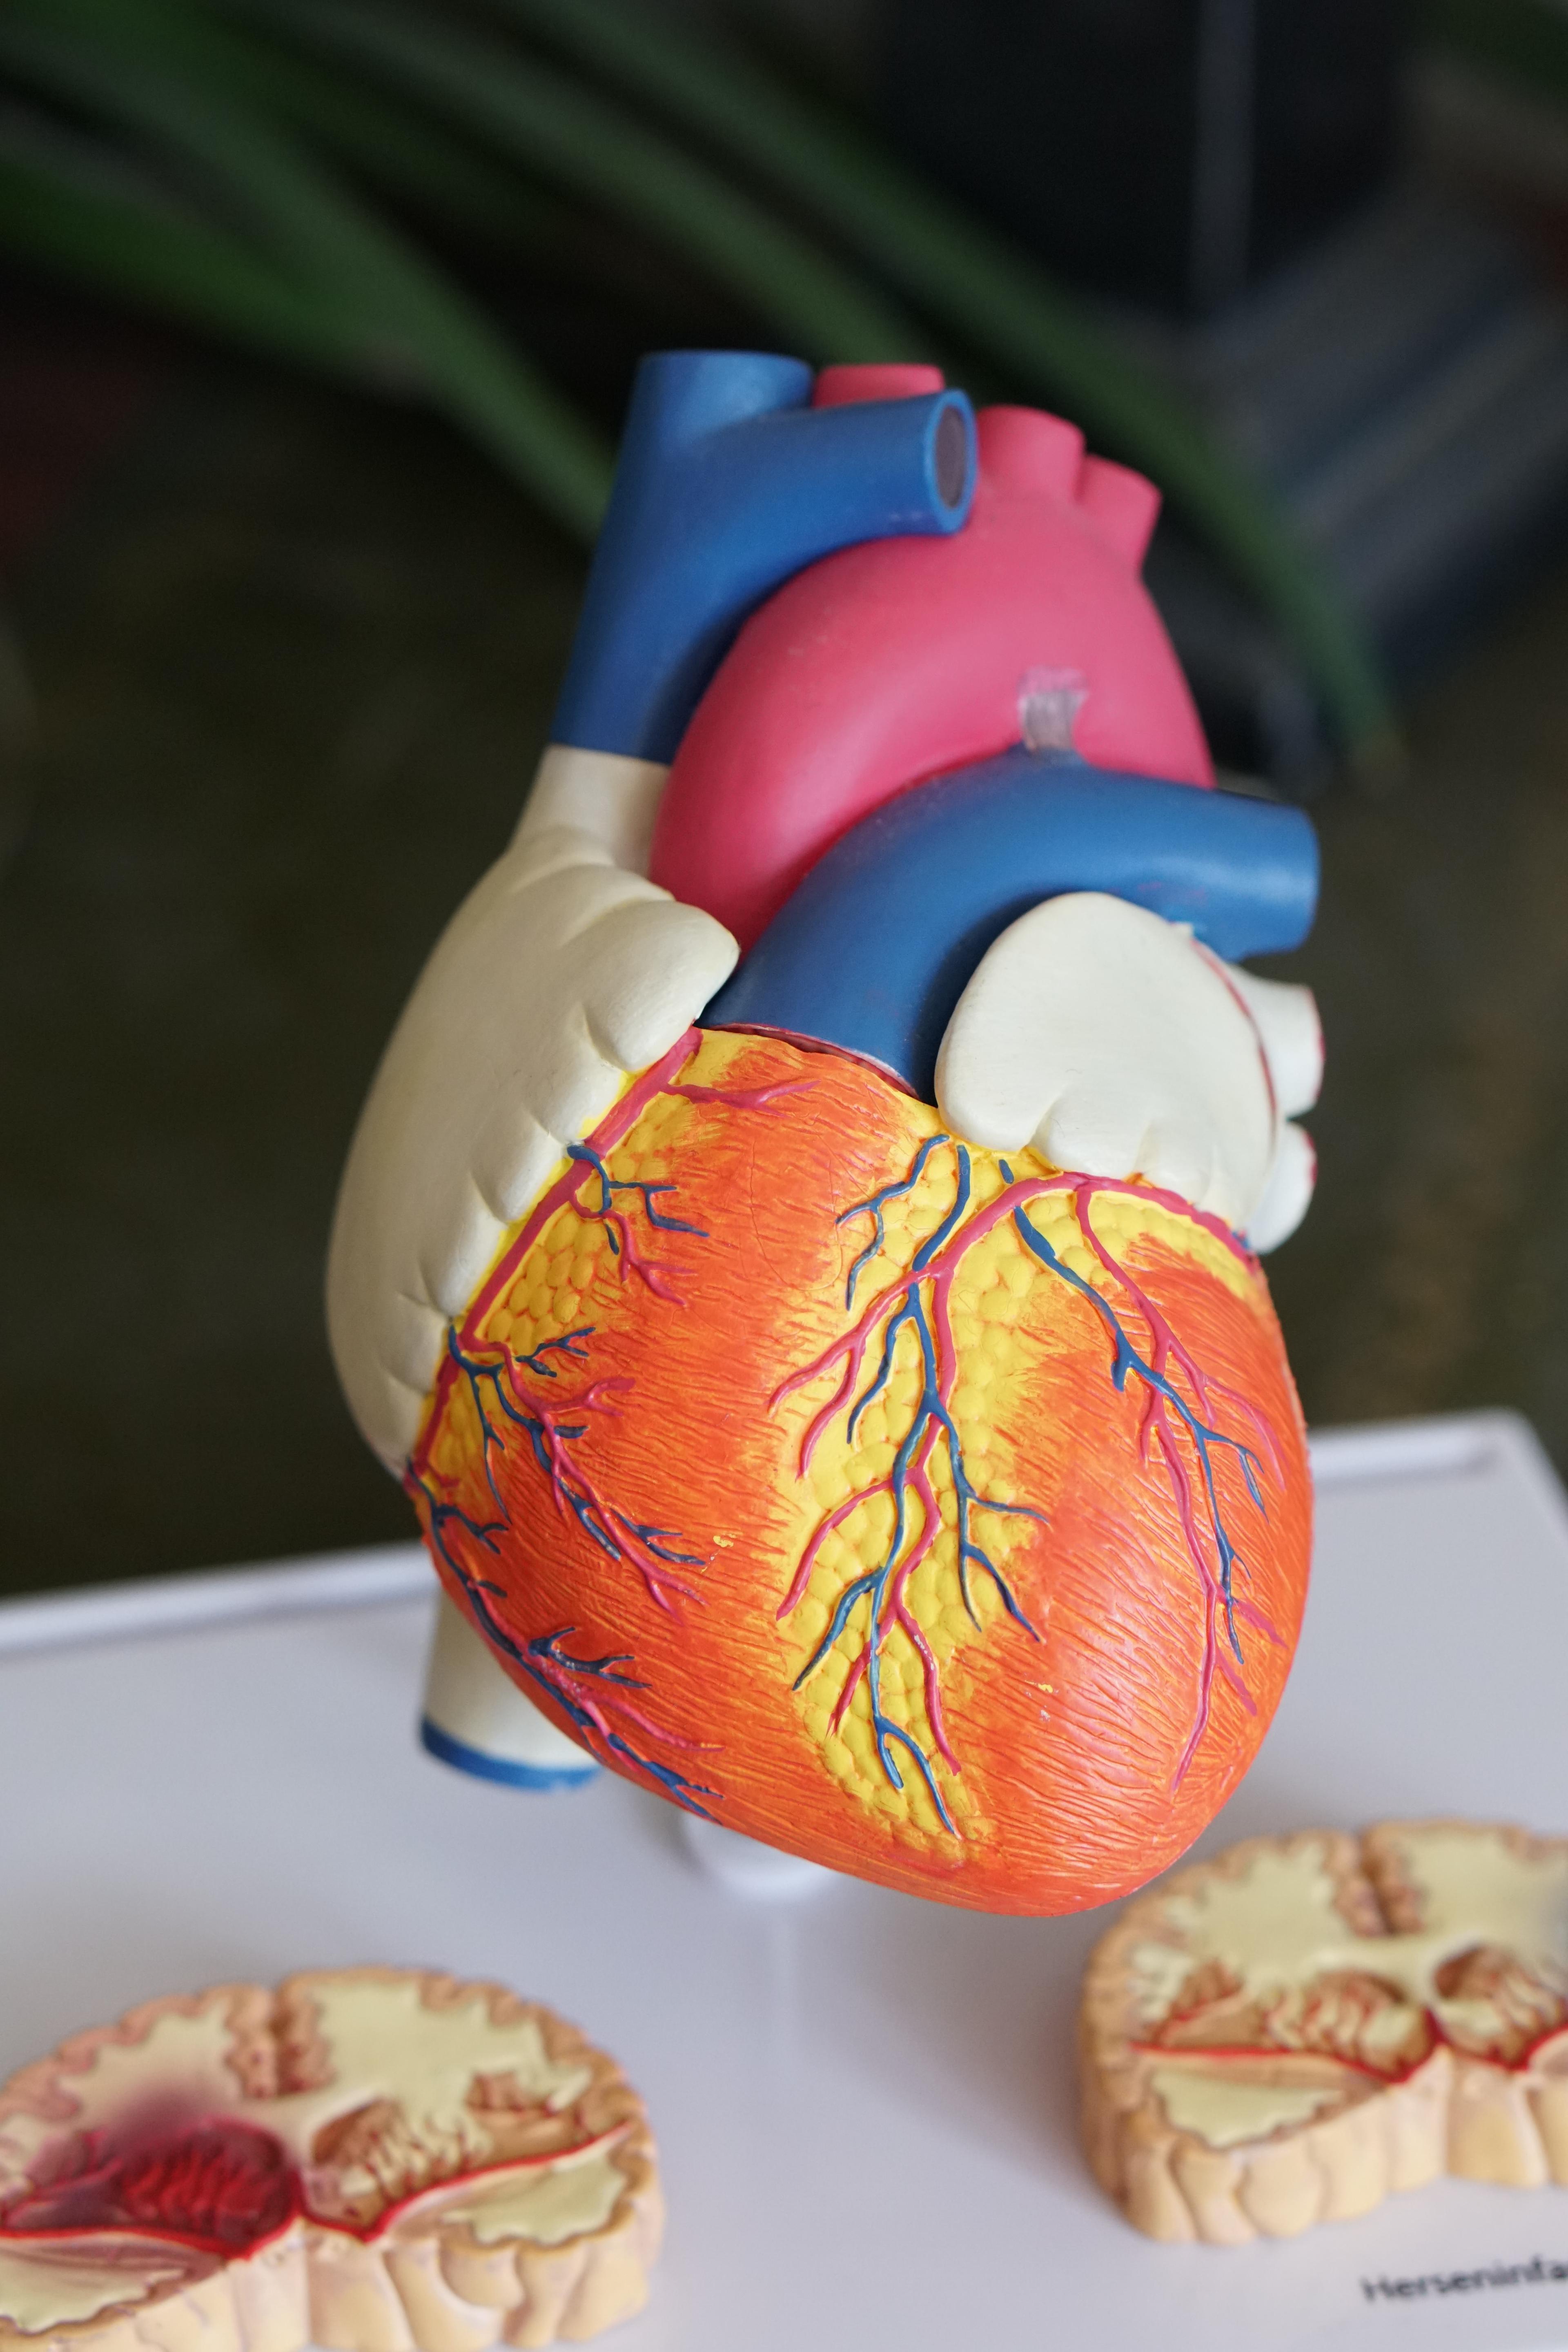 Niewydolność serca: Objawy, leczenie i jak poprawić jakość życia. Ważne, aby z chwilą rozpoznania niewydolności serca jak najszybciej wdrożyć odpowiednie leczenie. Przewlekła niewydolność serca